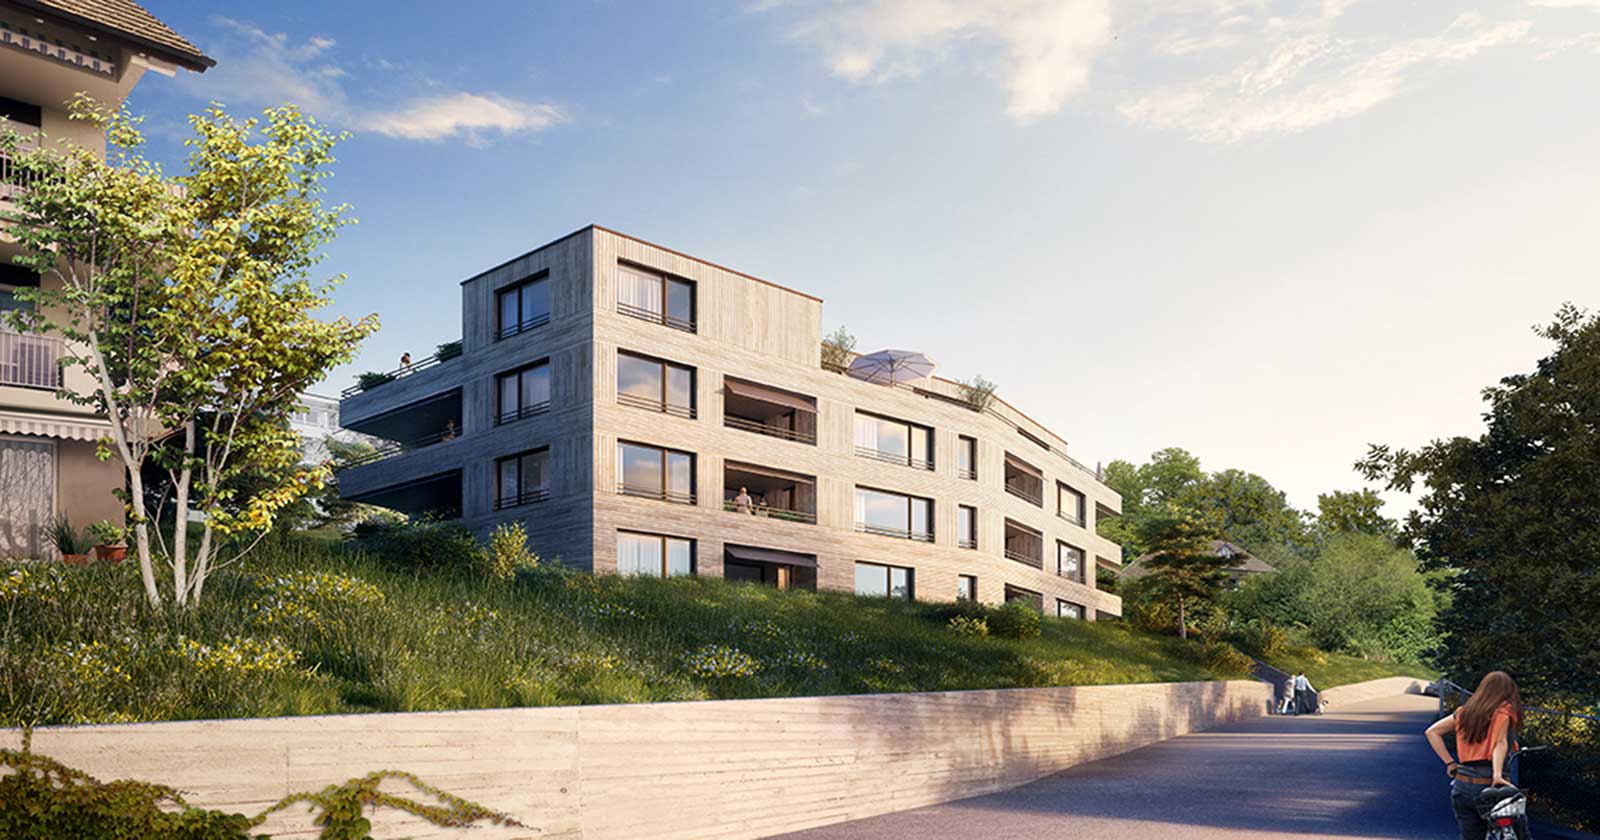 Visualisierung aussen Wettbewerb Neubau Mehrfamilienhaus im Eichhölzli Biel/Bienne